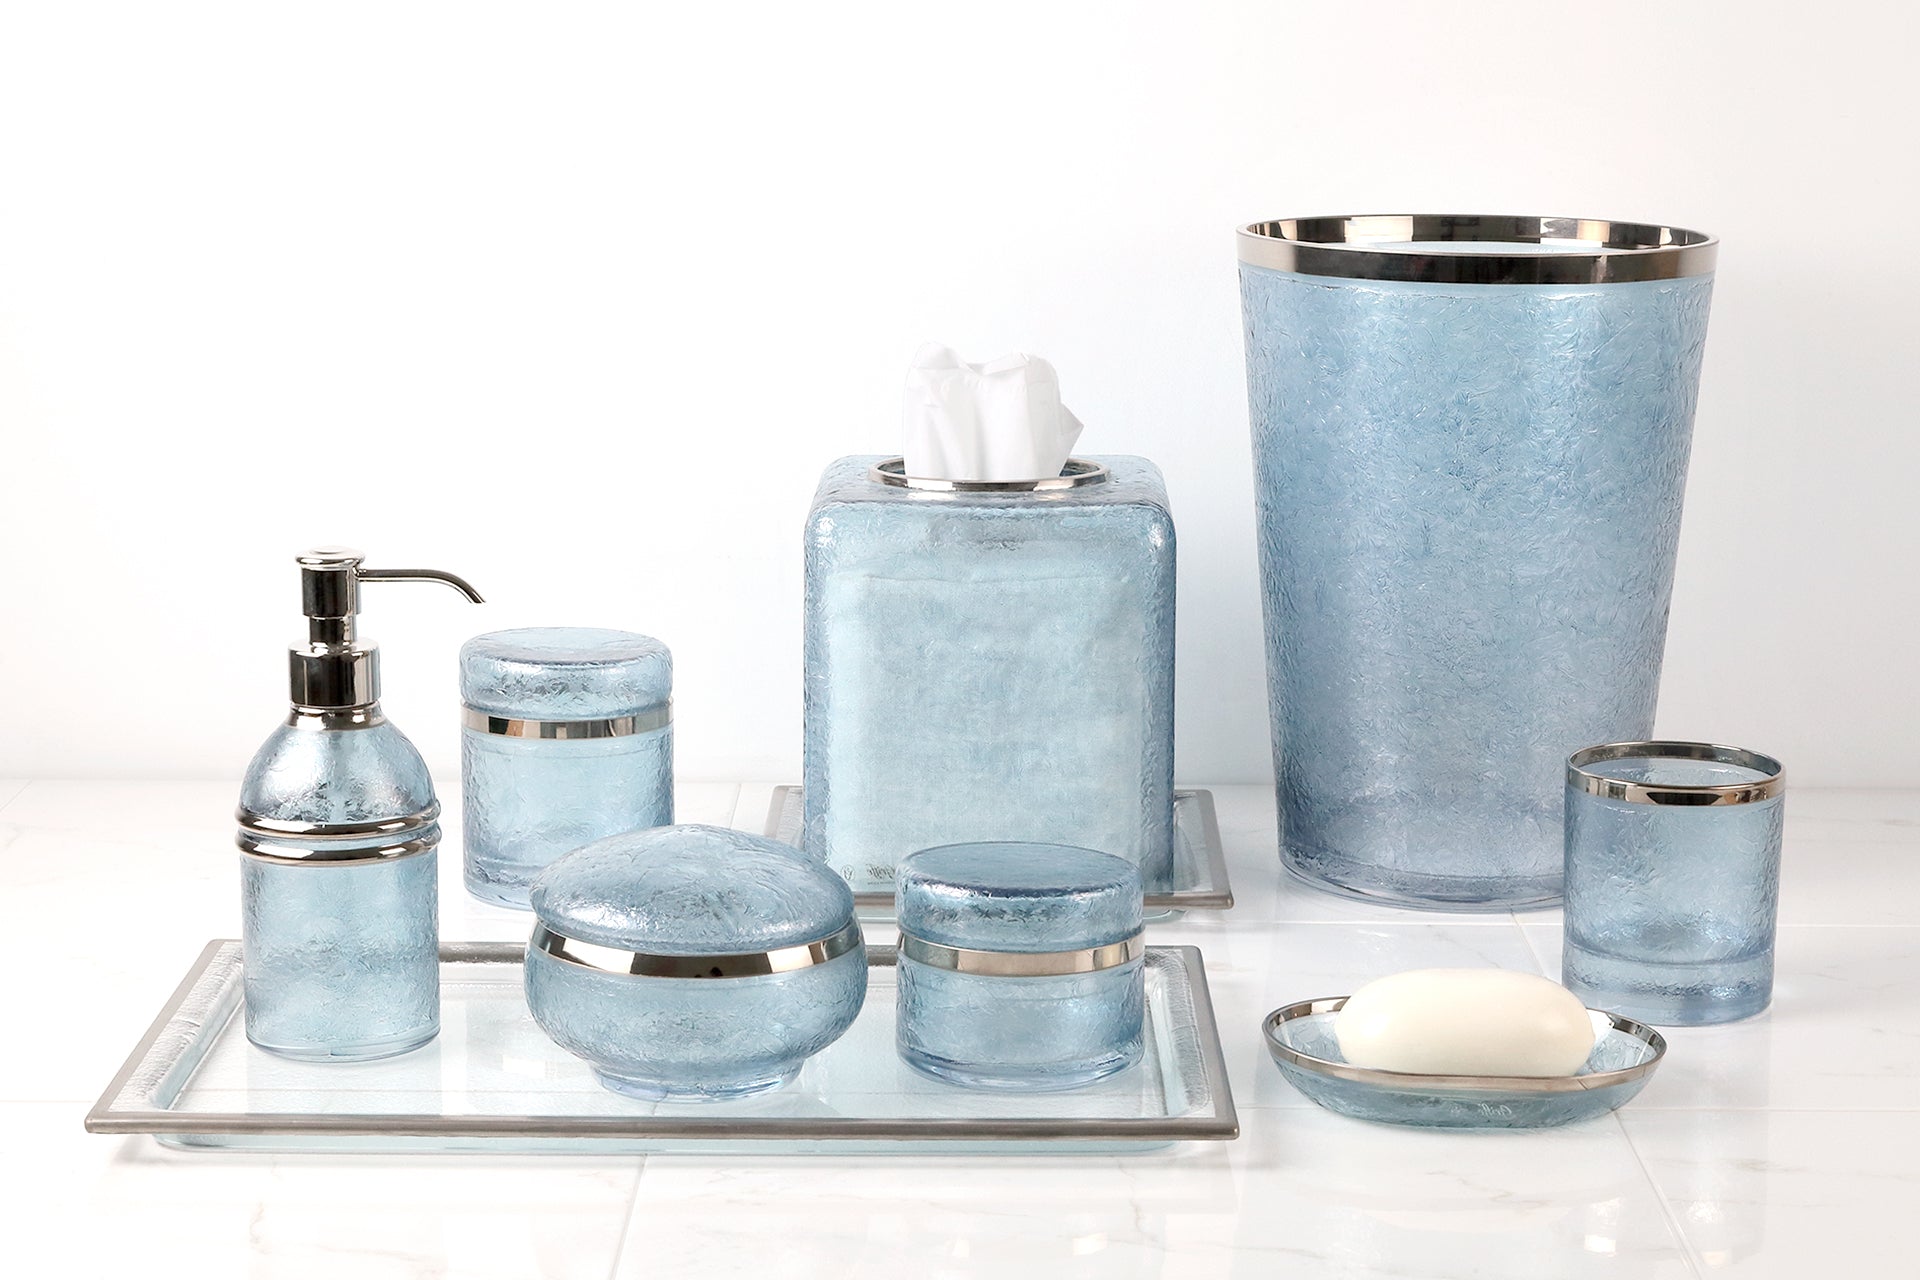 The Modern Matte Blue Ceramic Bath Accessories